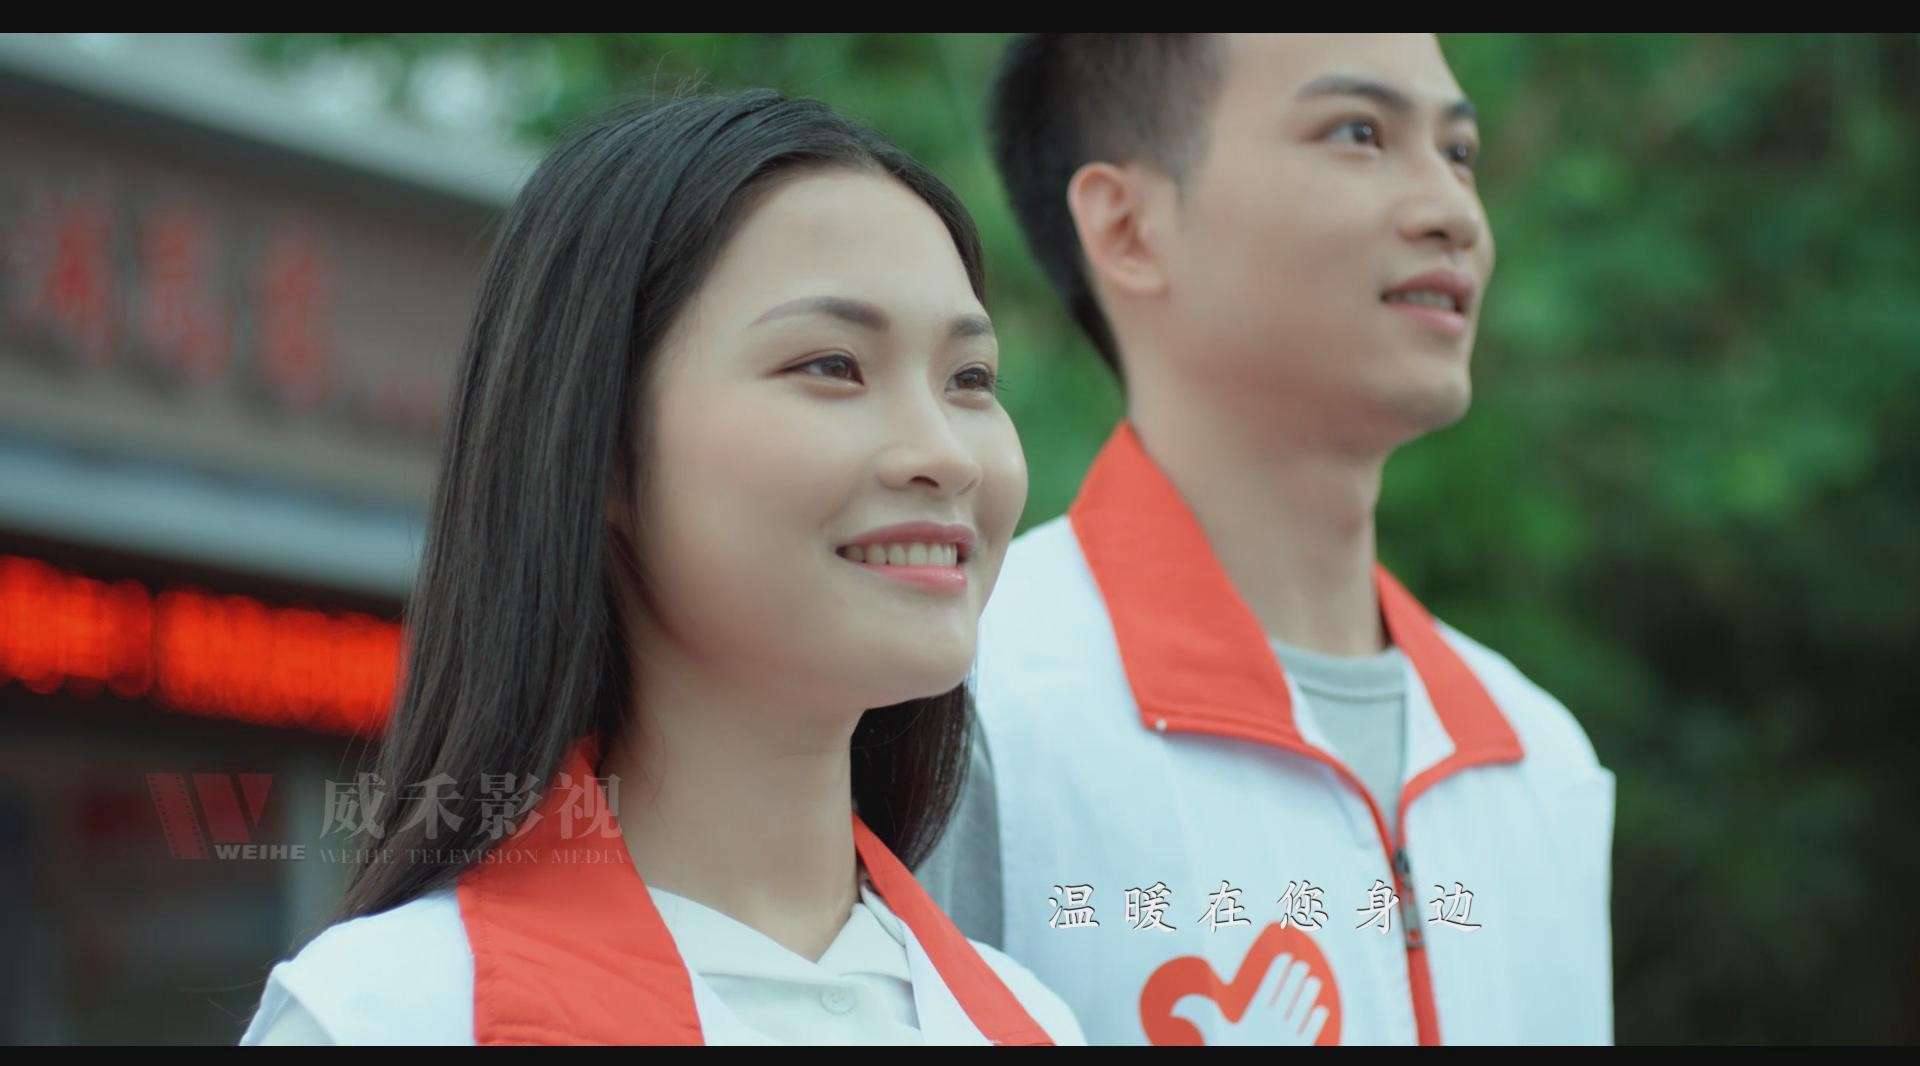 肇庆市高要区志愿者形象宣传片《温暖篇》